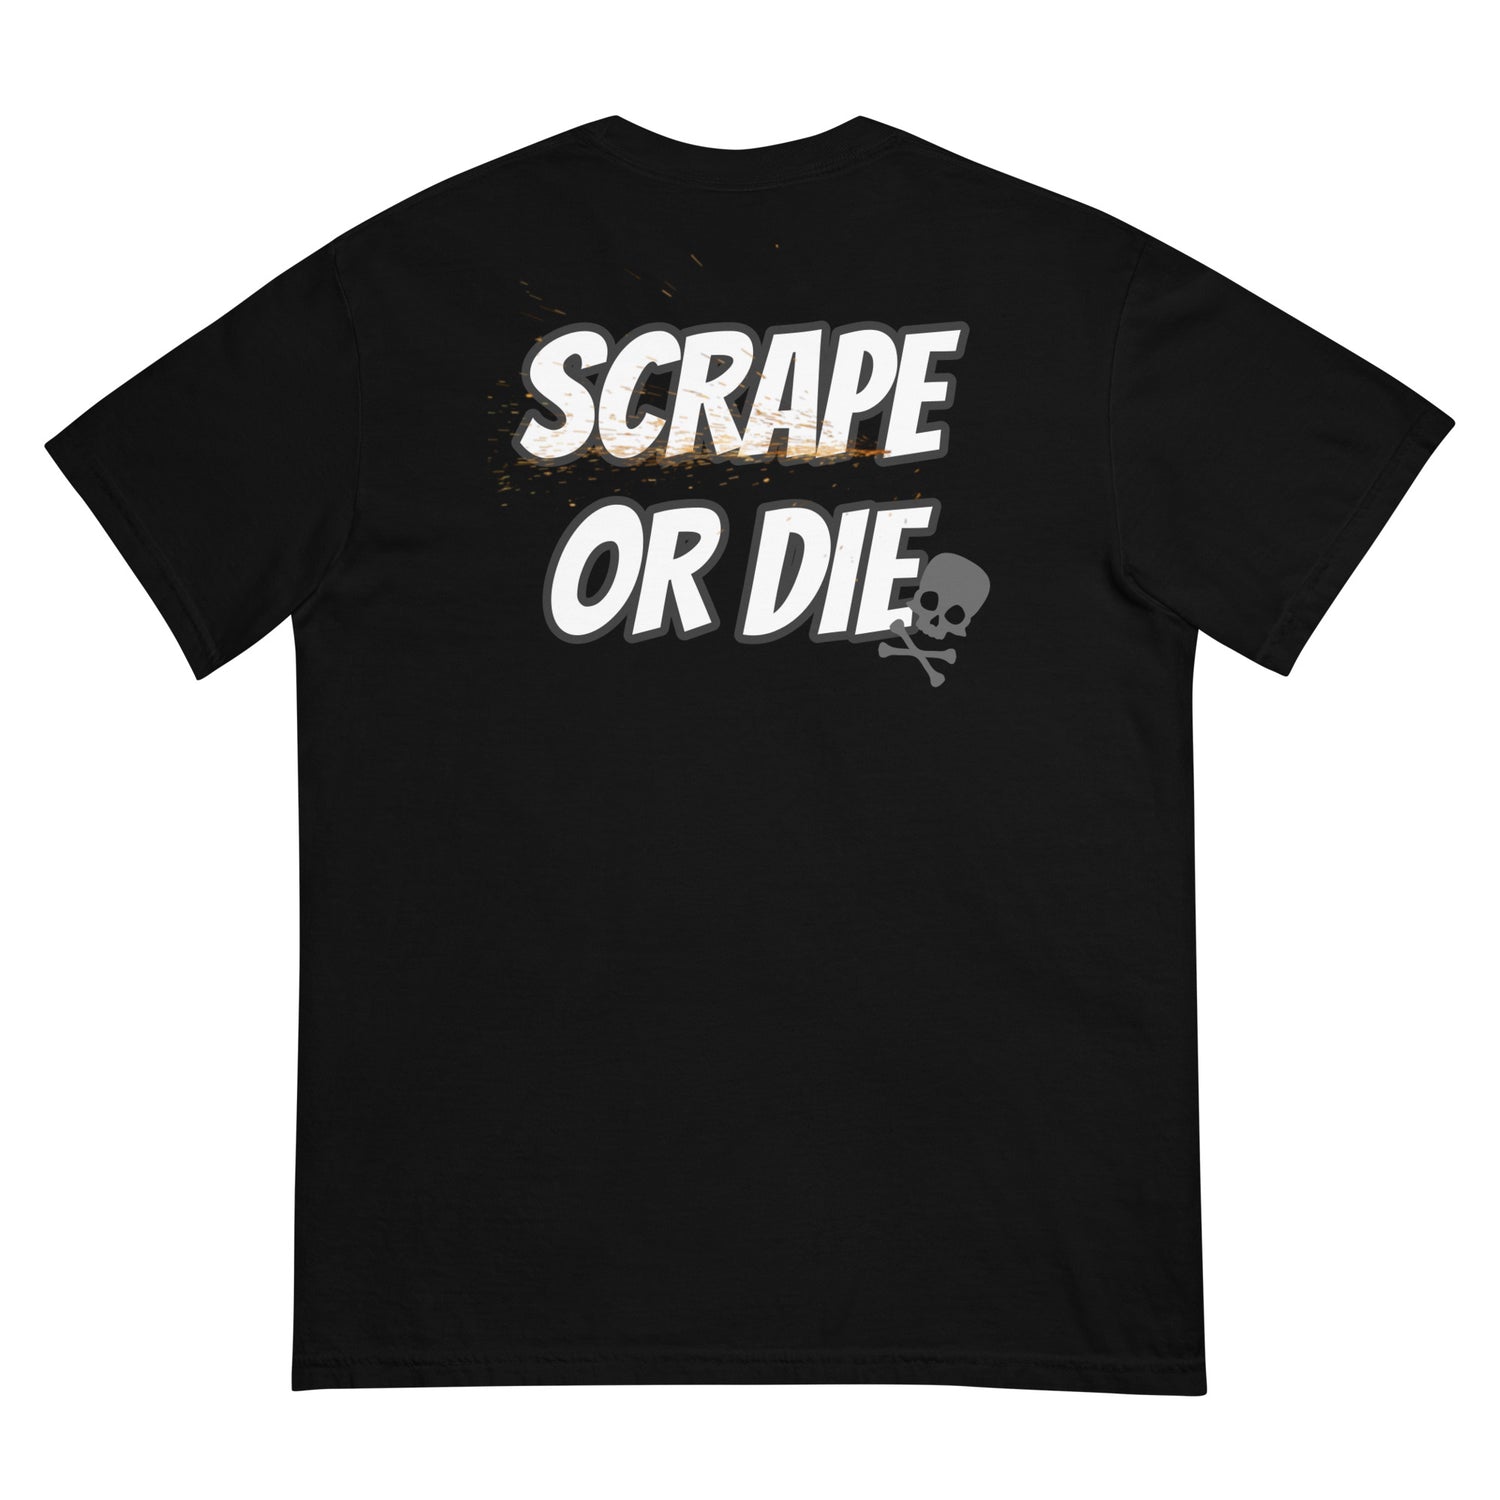 Scrape or Die!